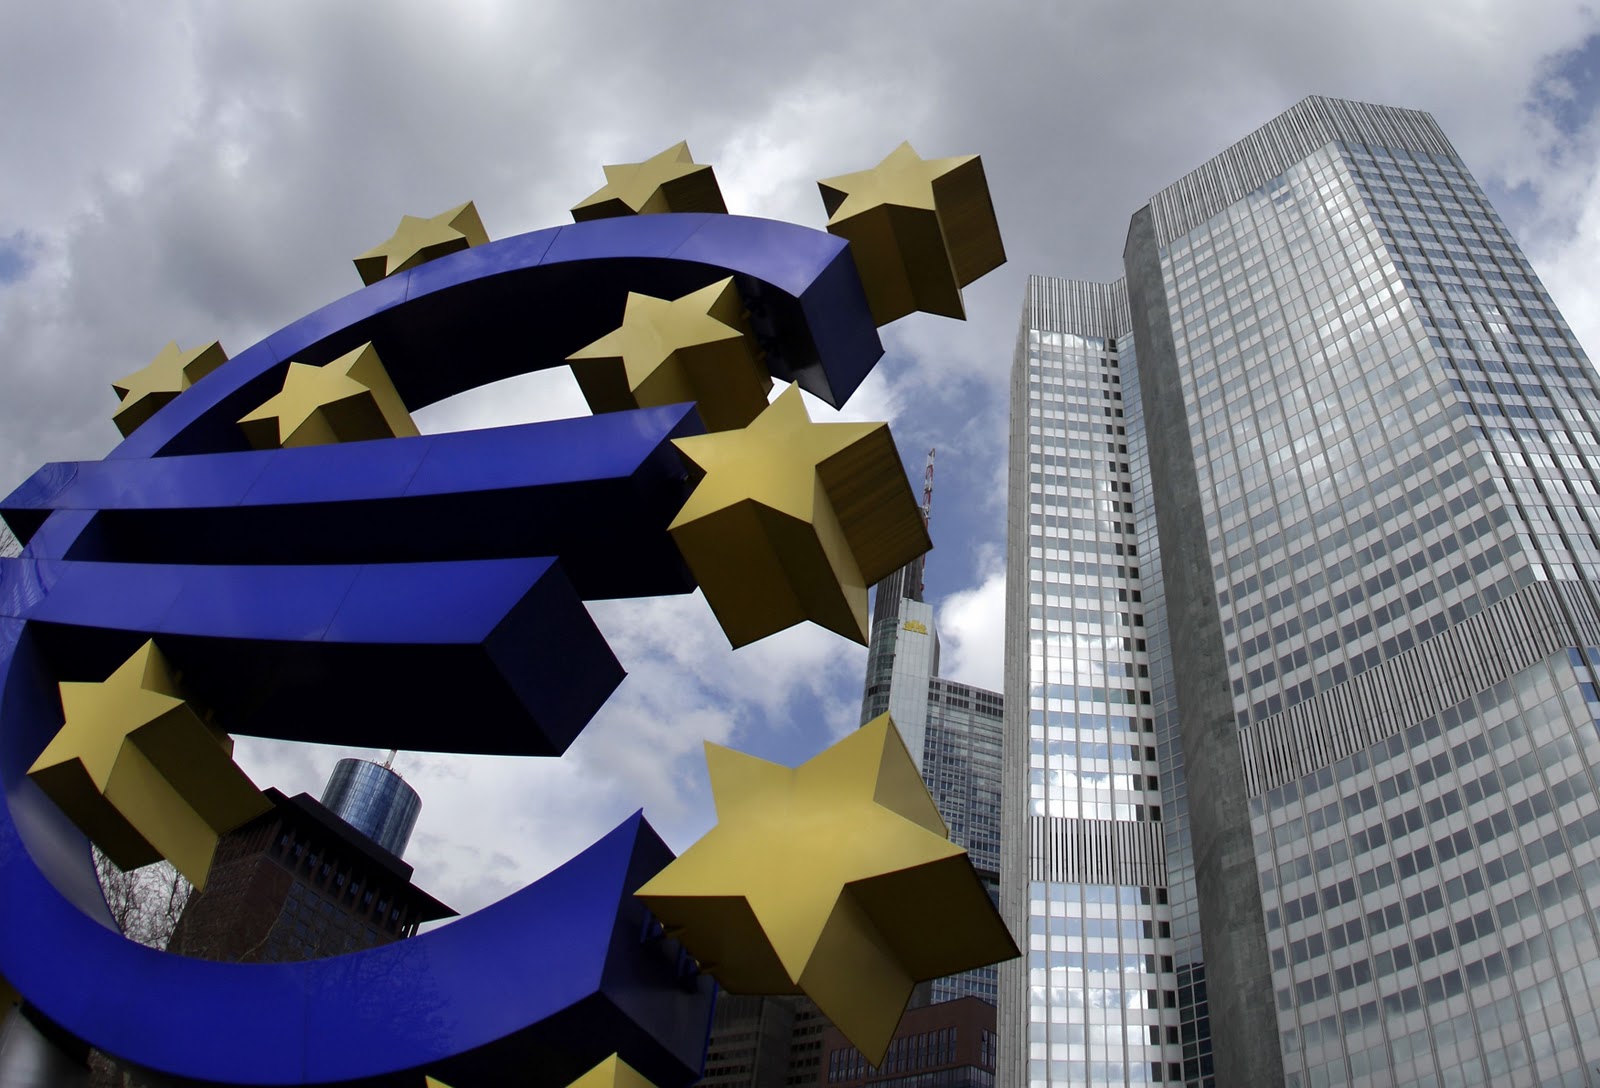 “Βόμβα” των FT: Στην ΕΕ εξετάζουν πως μπορεί να γίνει νόμιμο ένα Grexit